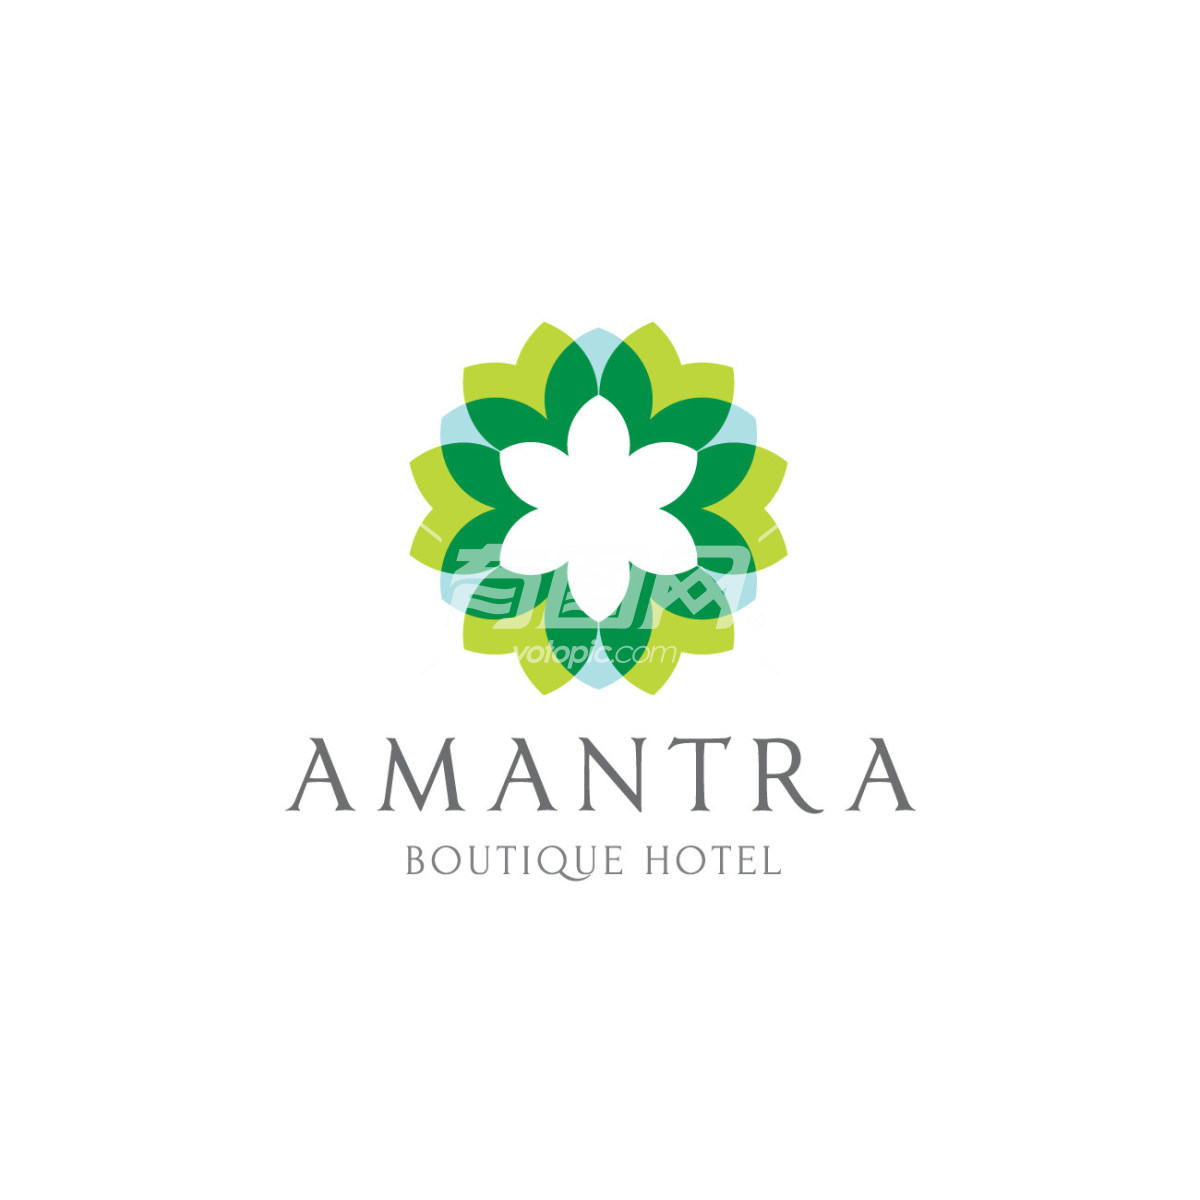 阿曼特拉精品酒店标志设计